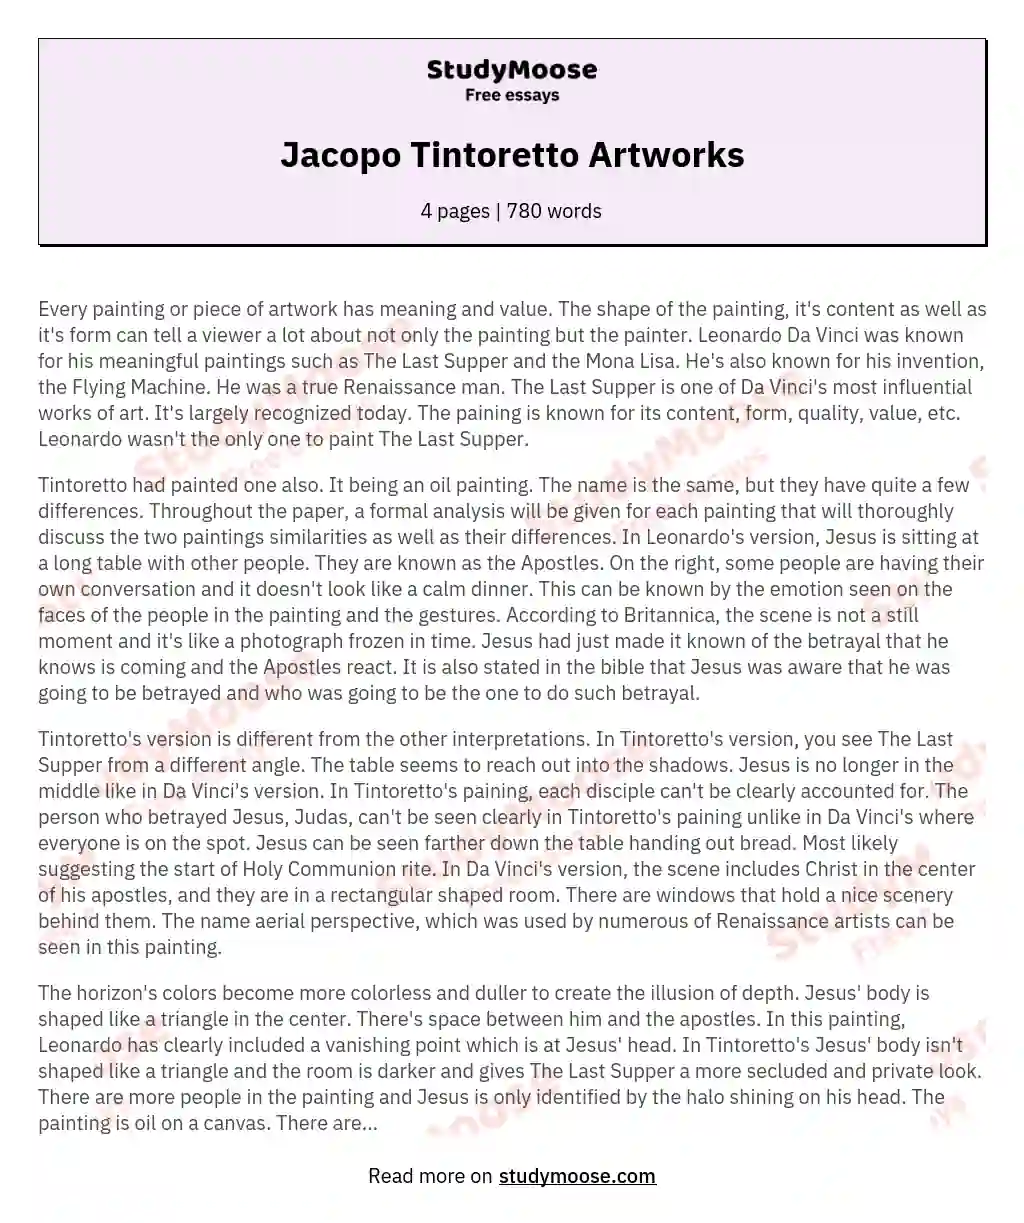 Jacopo Tintoretto Artworks